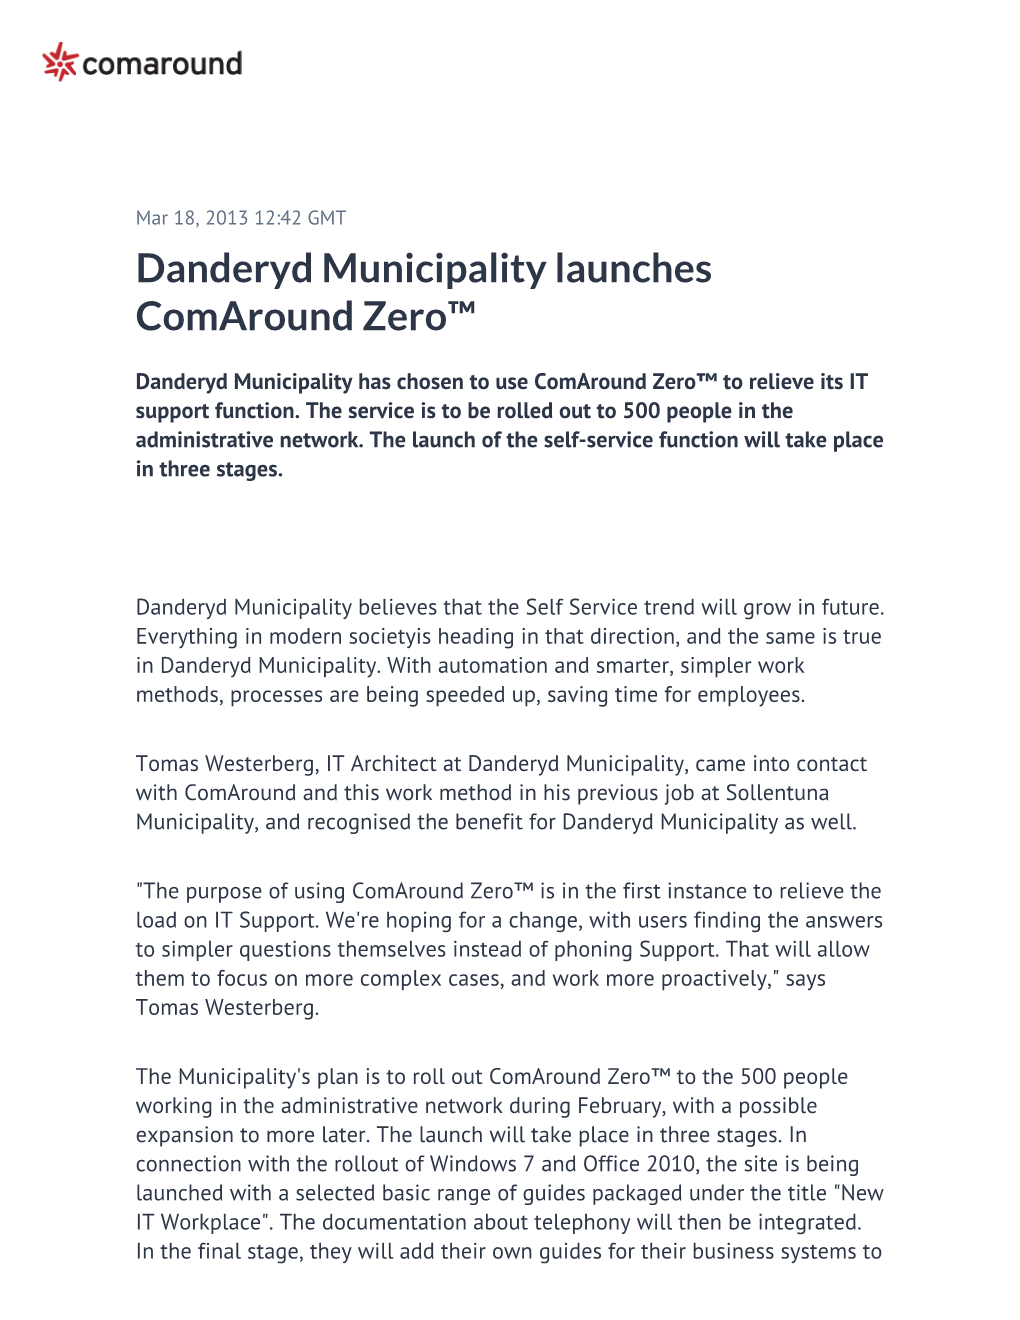 Danderyd Municipality Launches Comaround Zero™